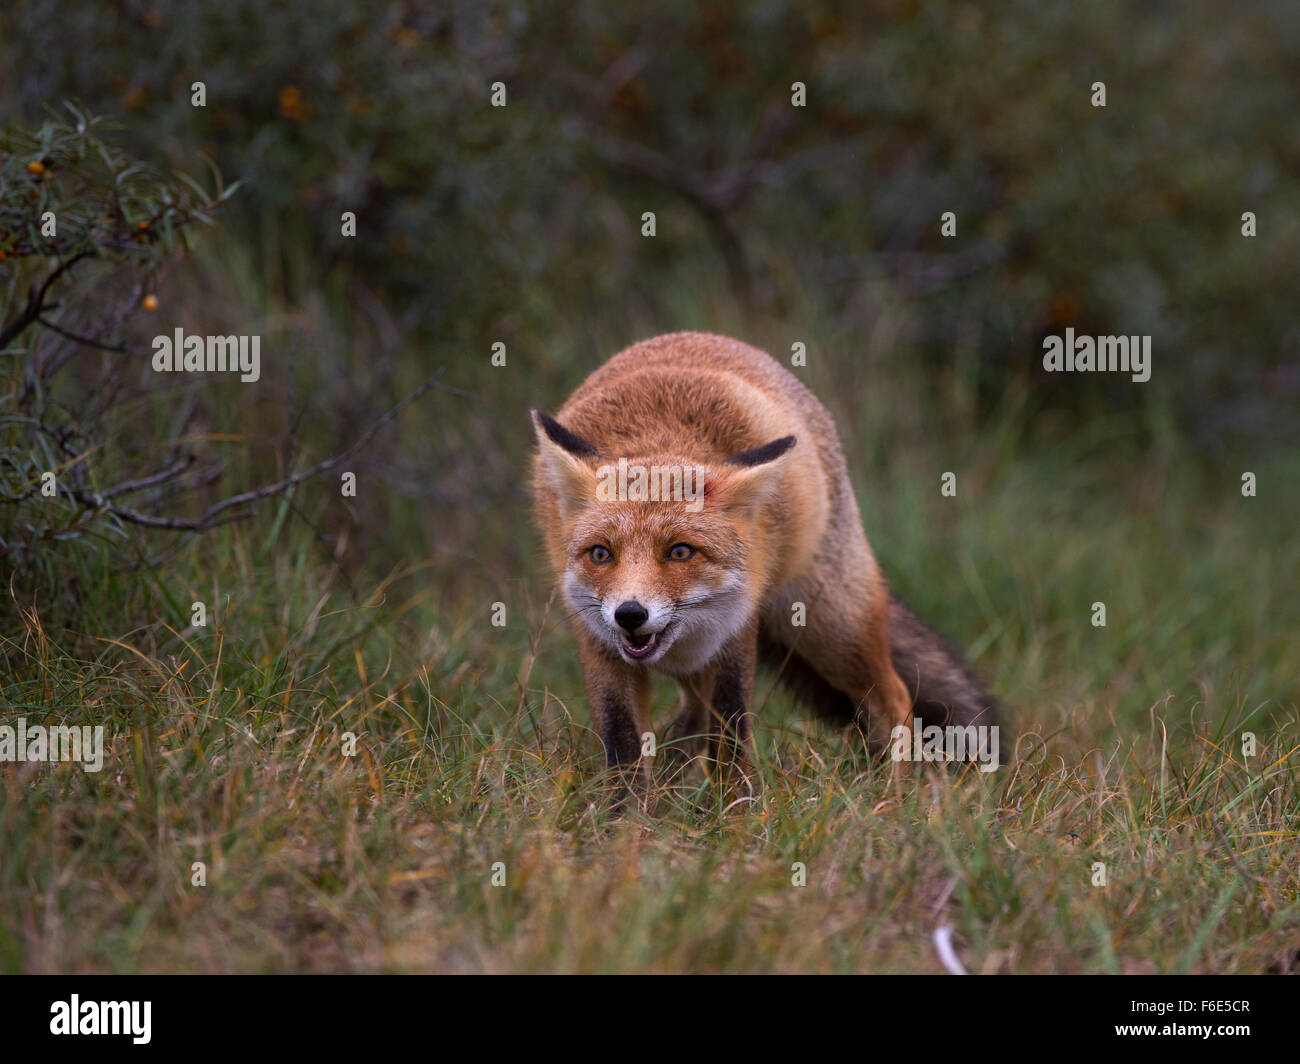 Le renard roux (Vulpes vulpes) sur le vagabondage, Hollande du Nord, Pays-Bas Banque D'Images